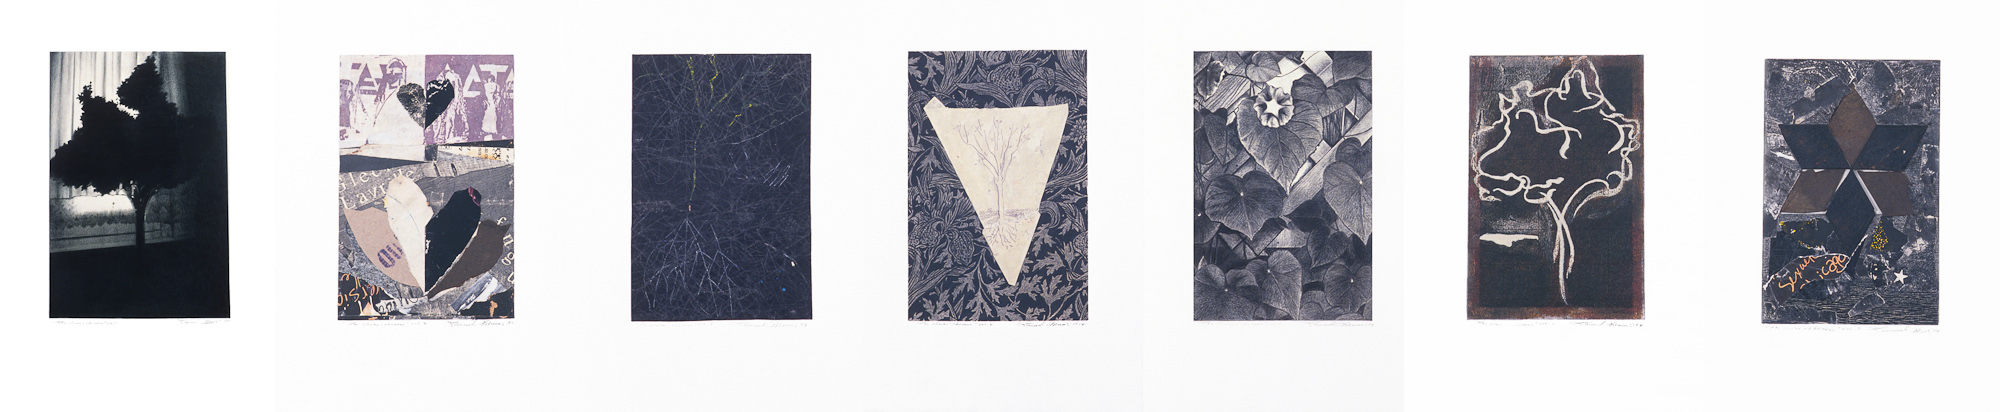 Les clairs-obscurs (série A), 1994. Techniques mixtes sur papier fort, 42,5 x 210 cm.